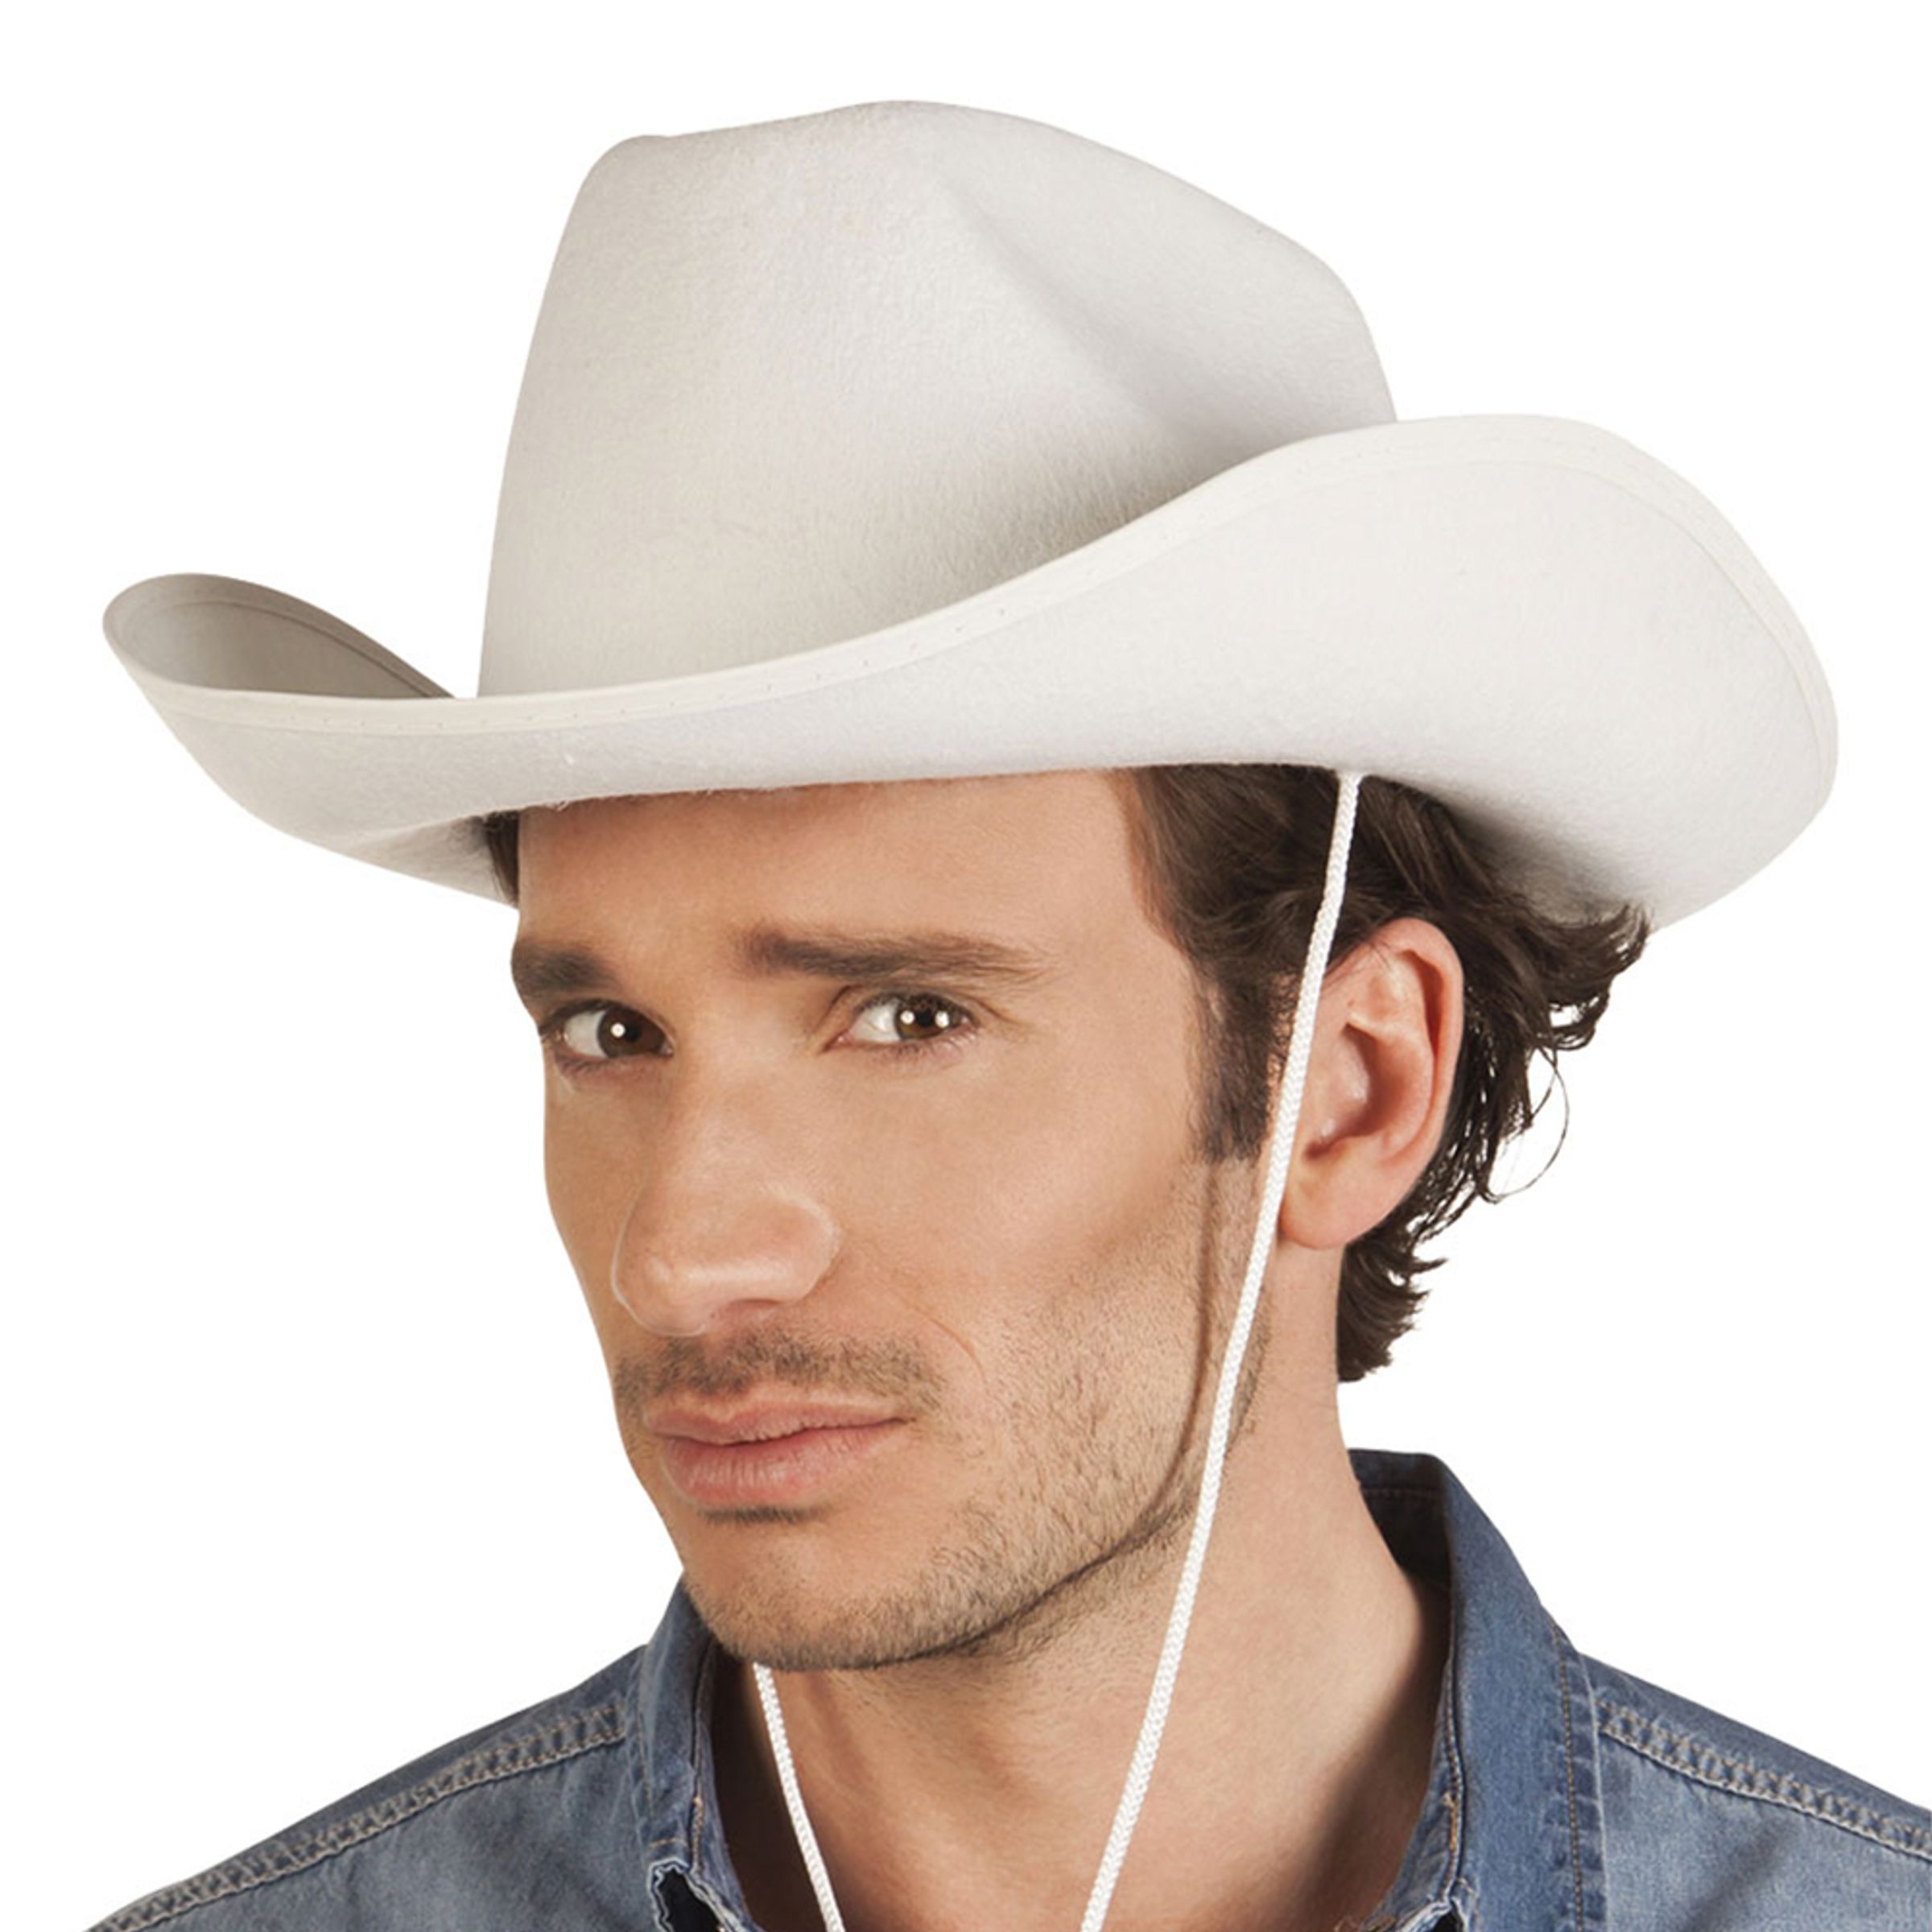 Cowboyhatt Rodeo Vit - One size